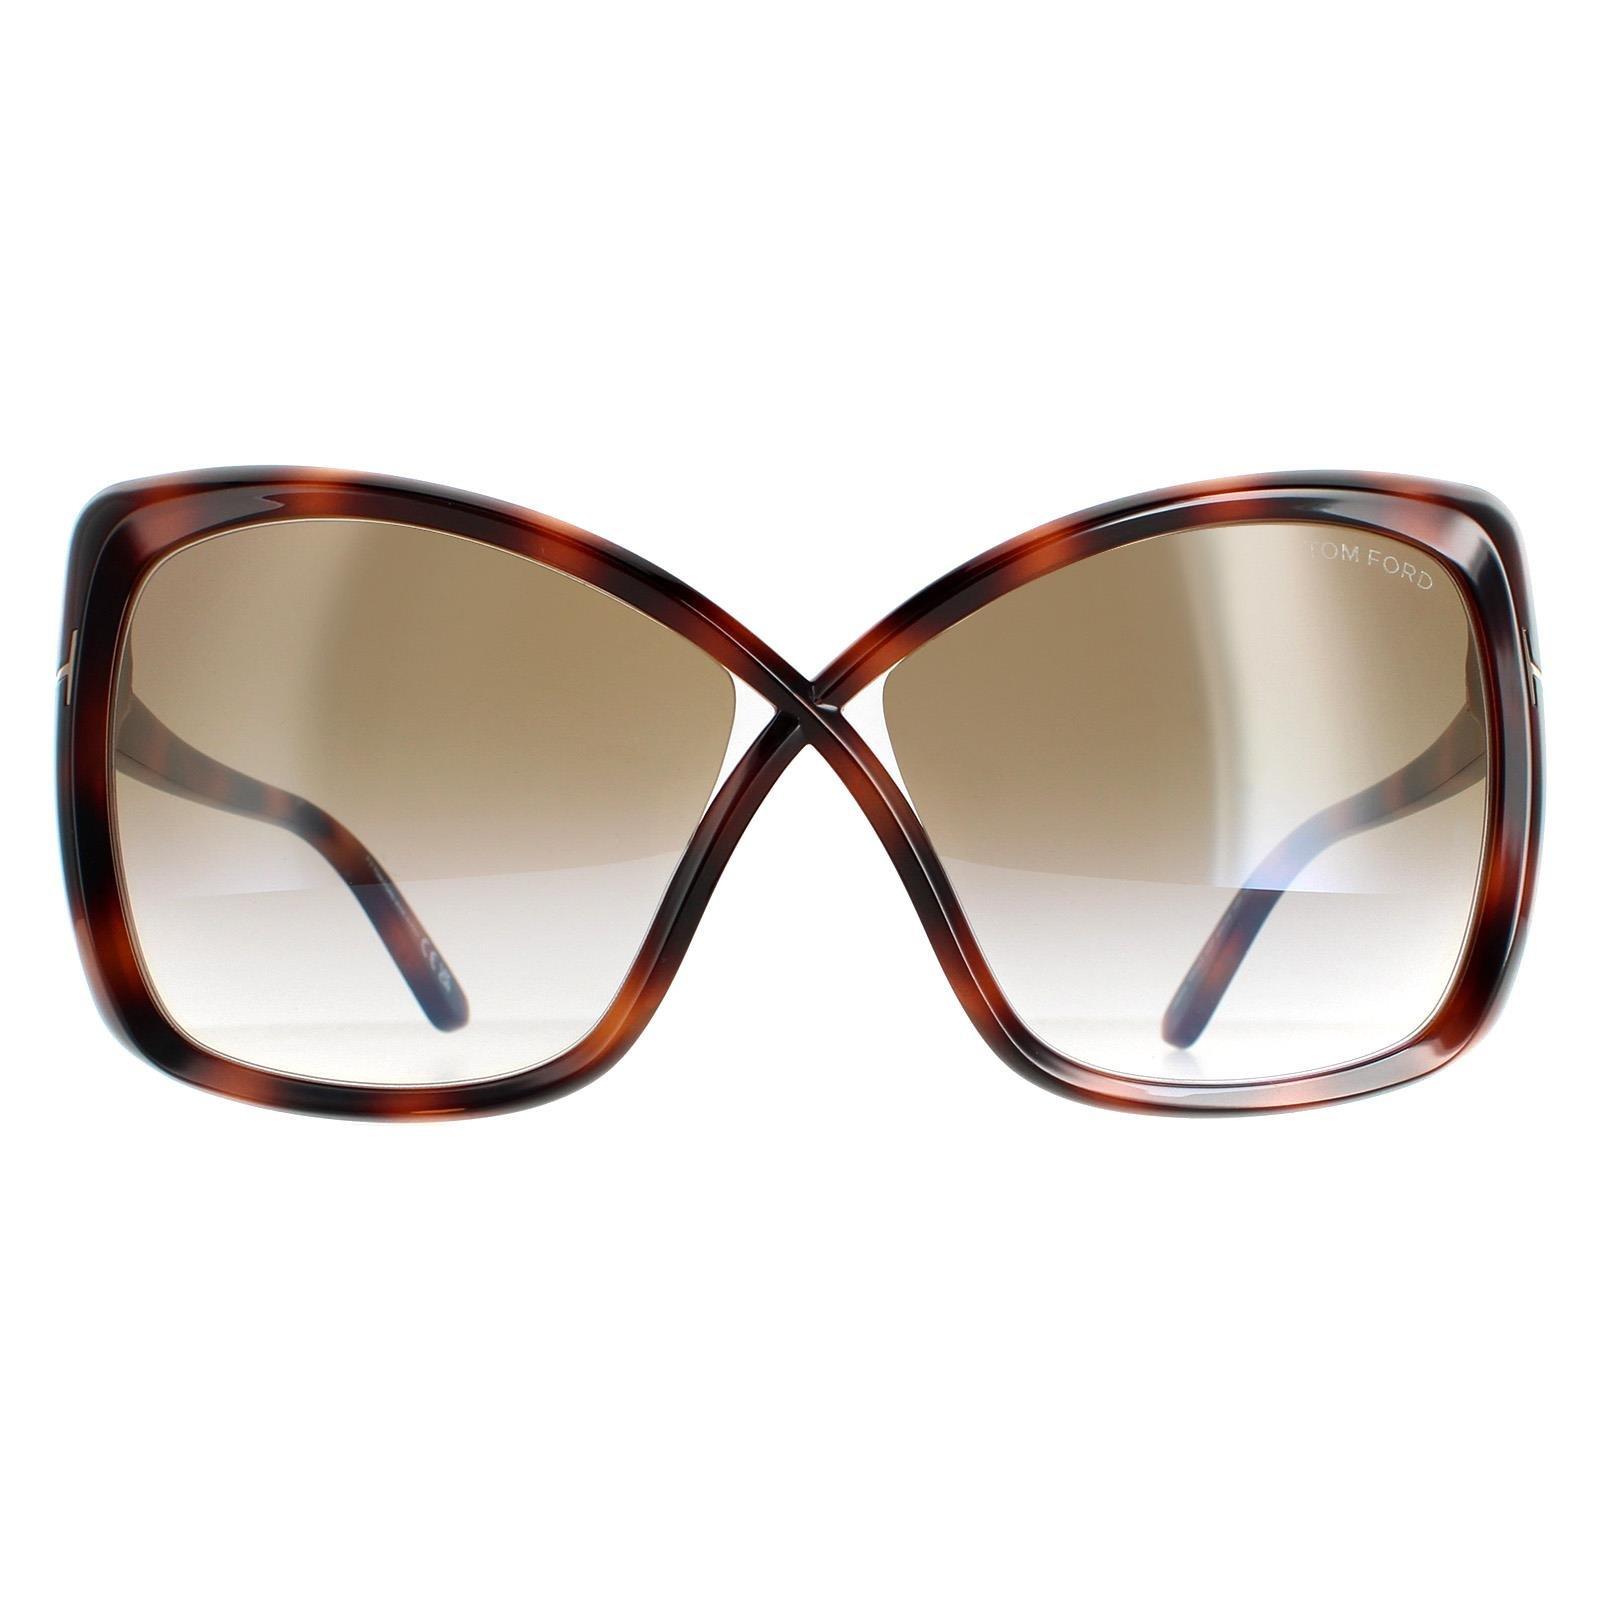 Модные солнцезащитные очки Blonde Havana Brown Gradient FT0943 Jasmin Tom Ford, коричневый